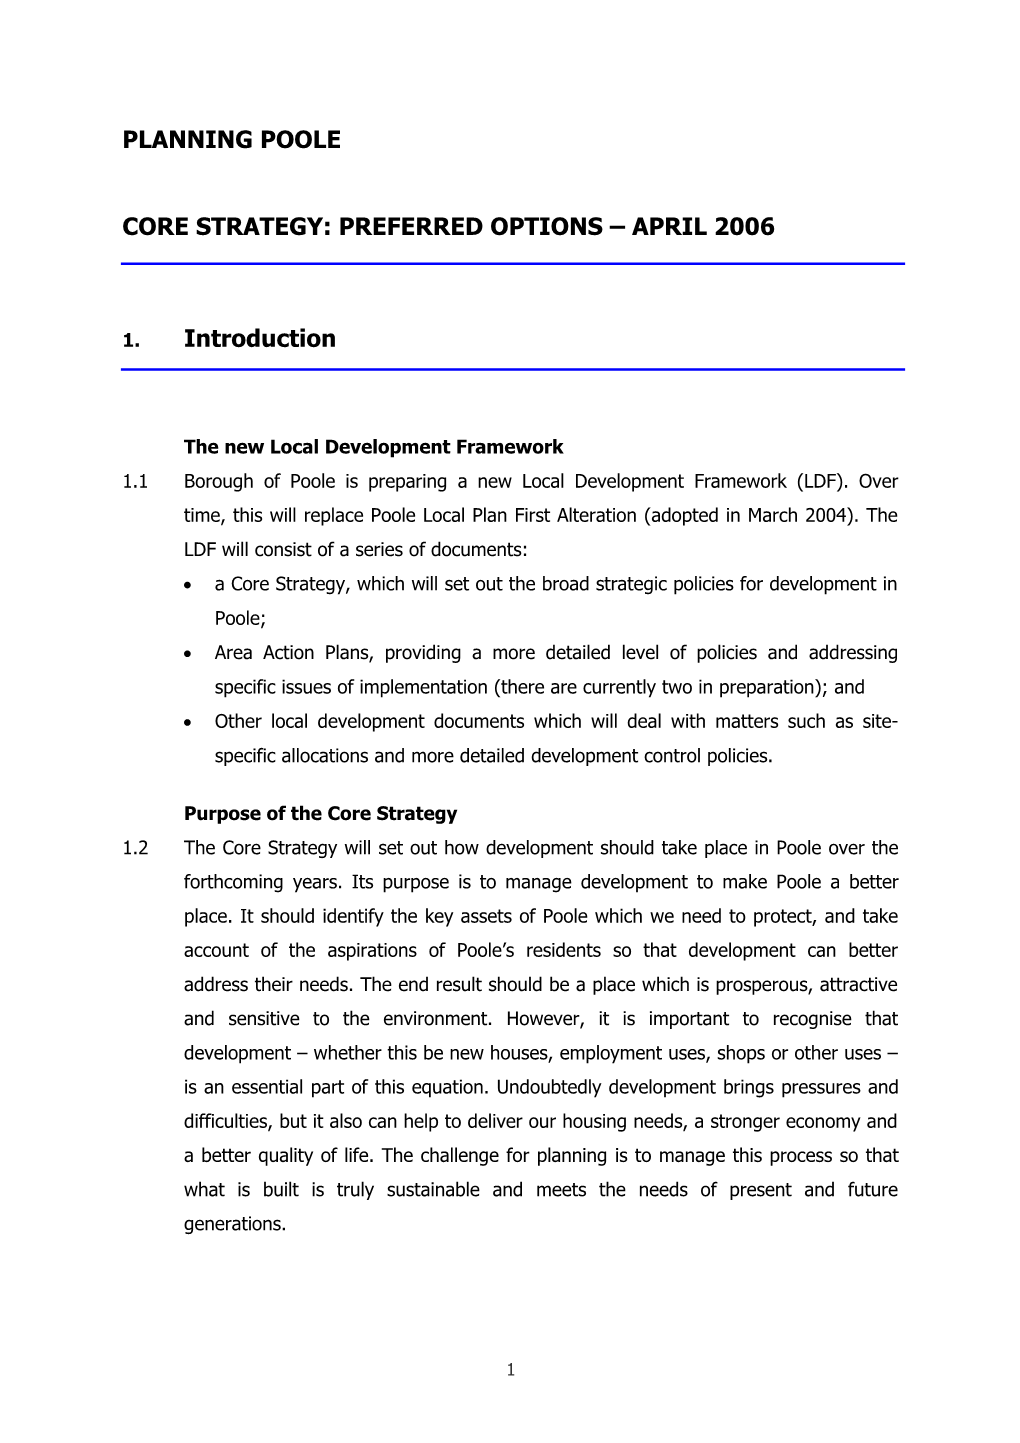 PFD Councillor Parker - 19 April 2006 Core Strategy - Report